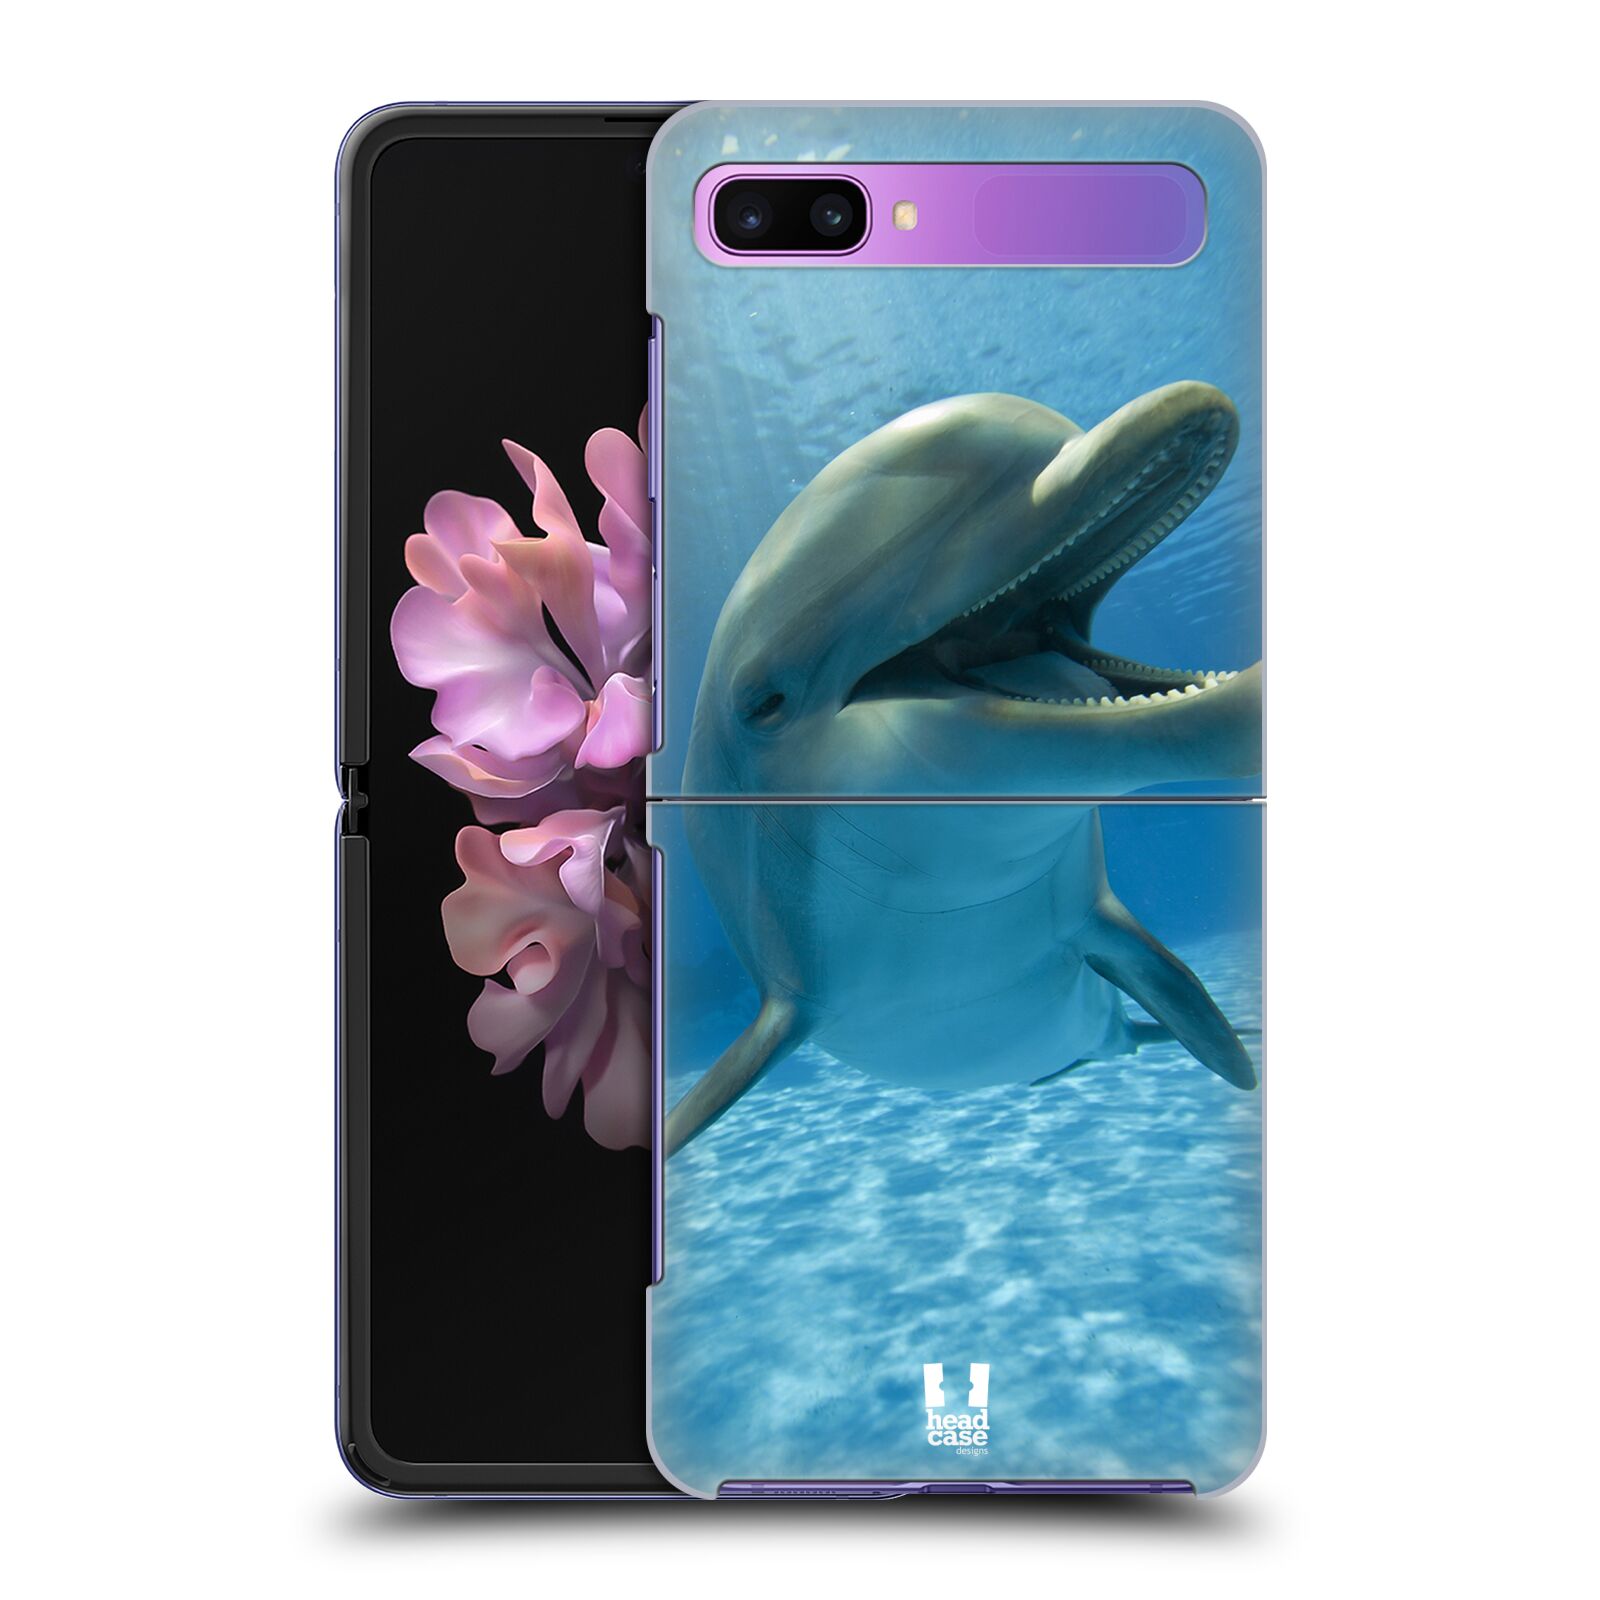 Zadní obal pro mobil Samsung Galaxy Z Flip - HEAD CASE - Svět zvířat delfín v moři